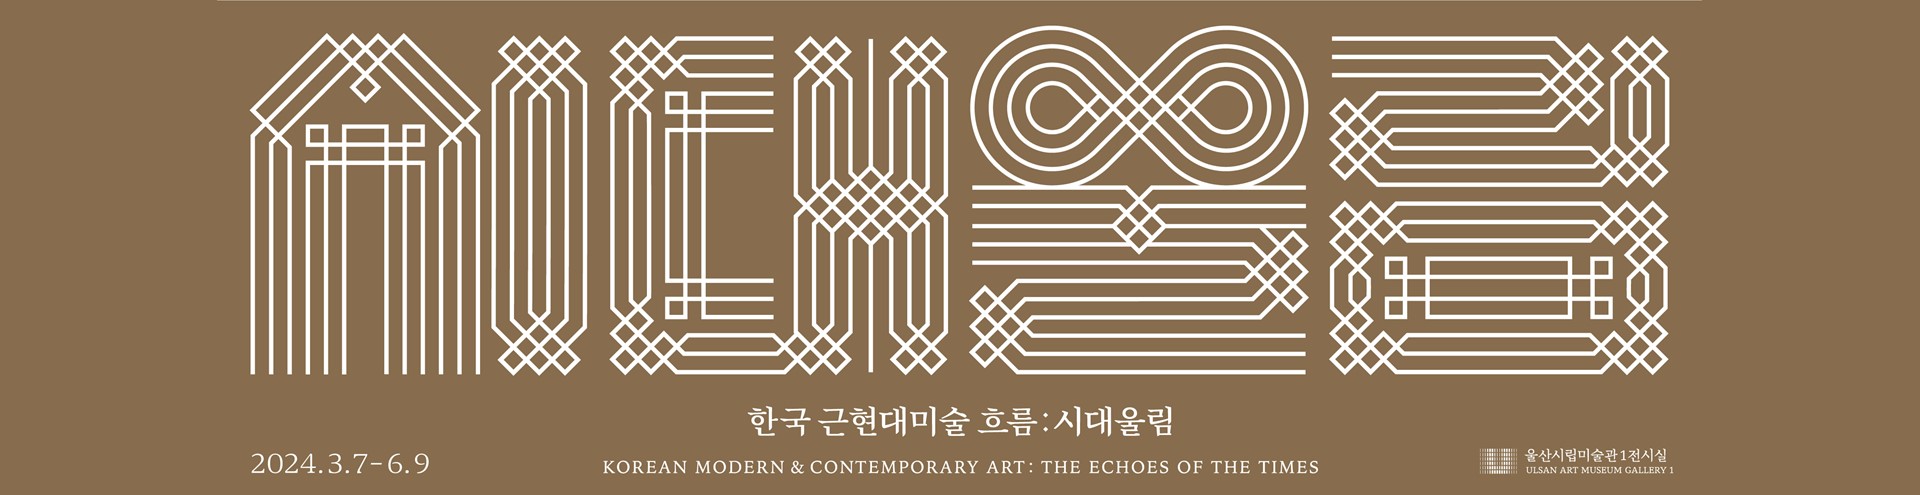 한국 근현대미술 흐름 : 시대 울림